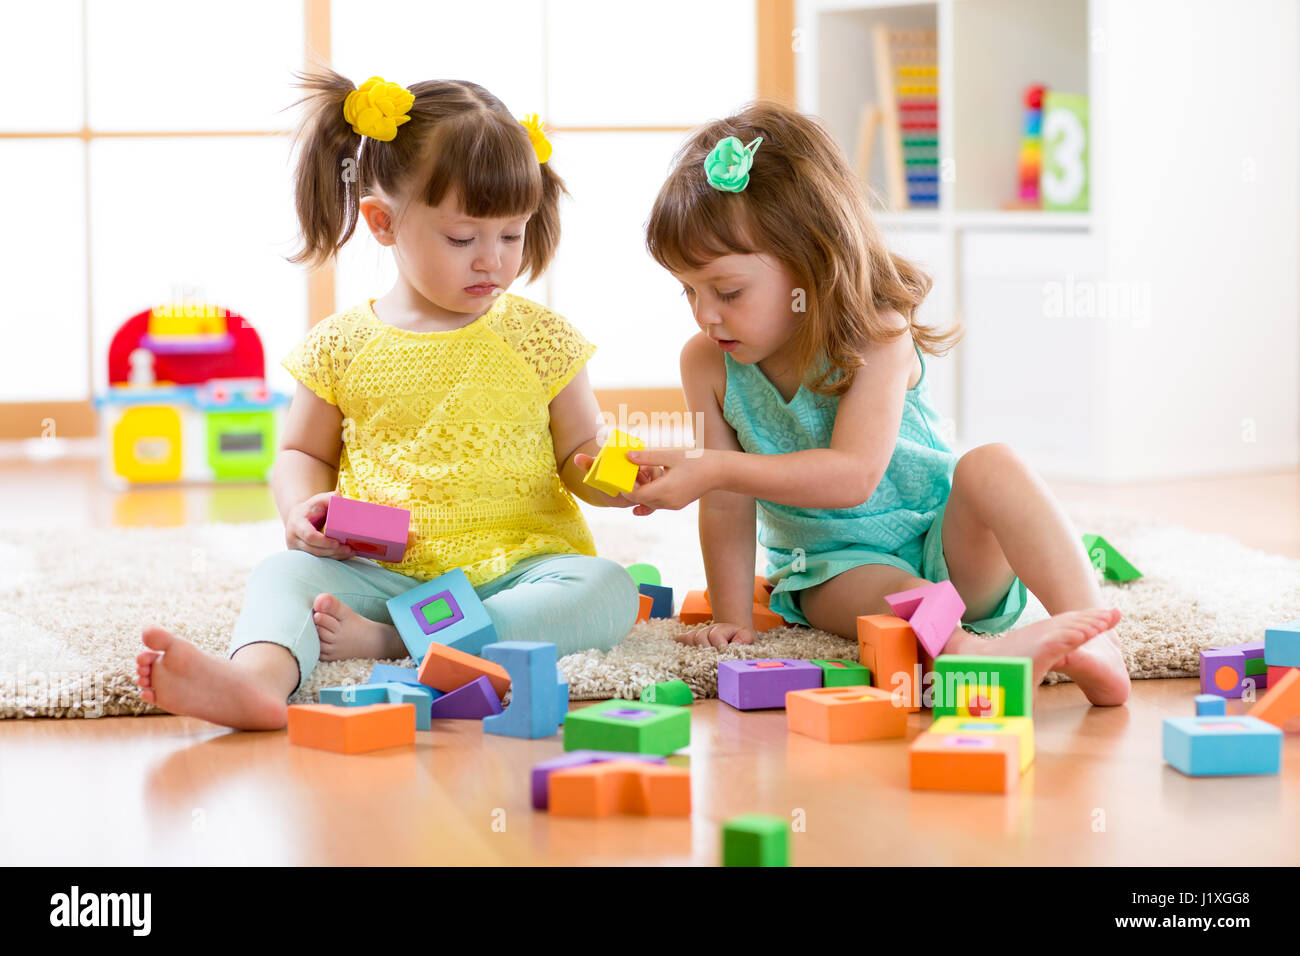 Deux amis enfants jouer ensemble à la maternelle, une garderie ou accueil Banque D'Images